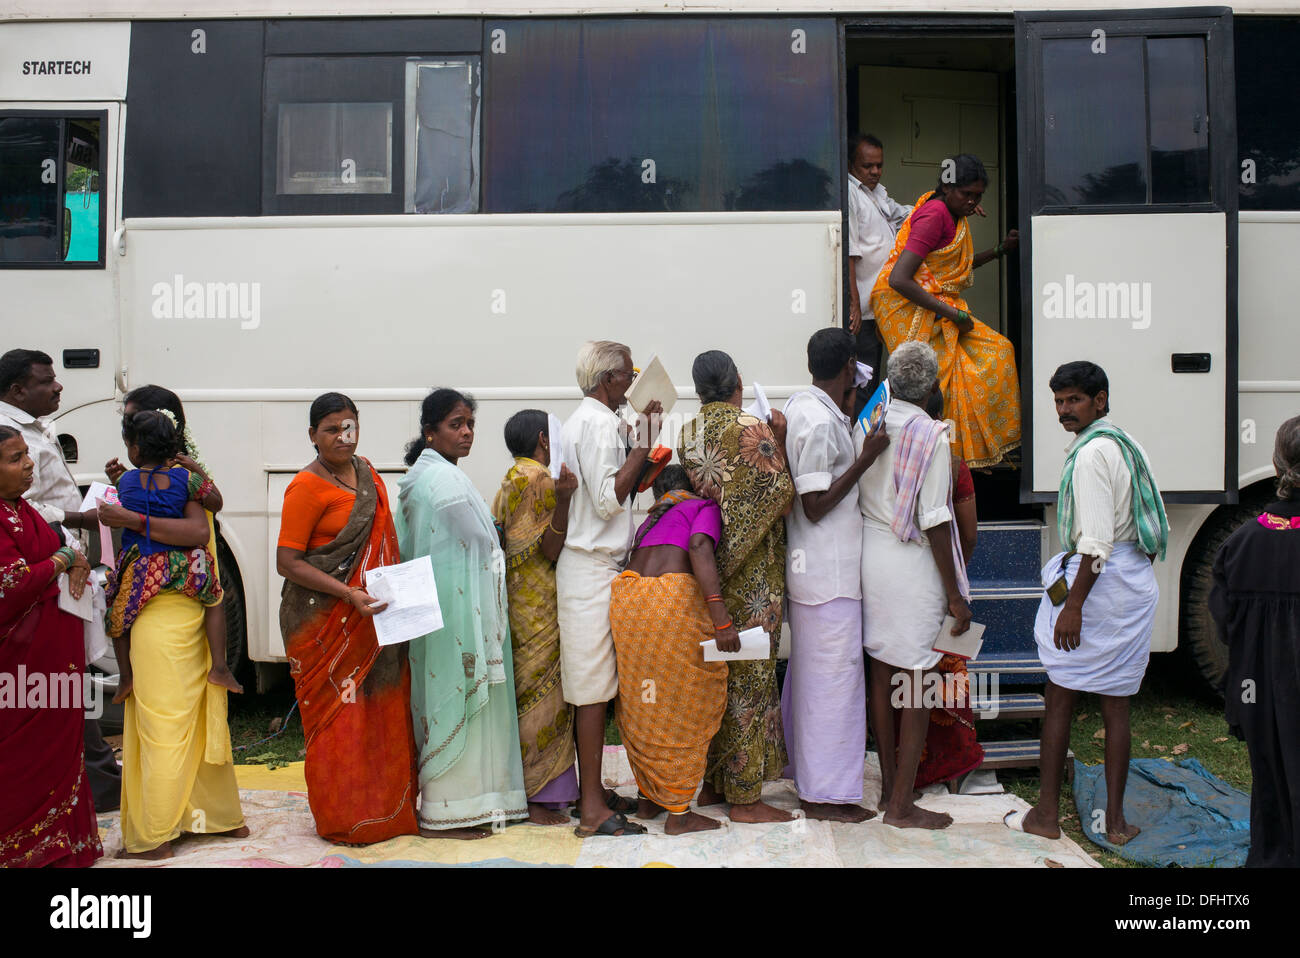 Patienten, die Schlange für die Tests in den Sri Sathya Sai Baba-mobiles Krankenhaus-Bus in einem indischen Dorf. Andhra Pradesh, Indien Stockfoto